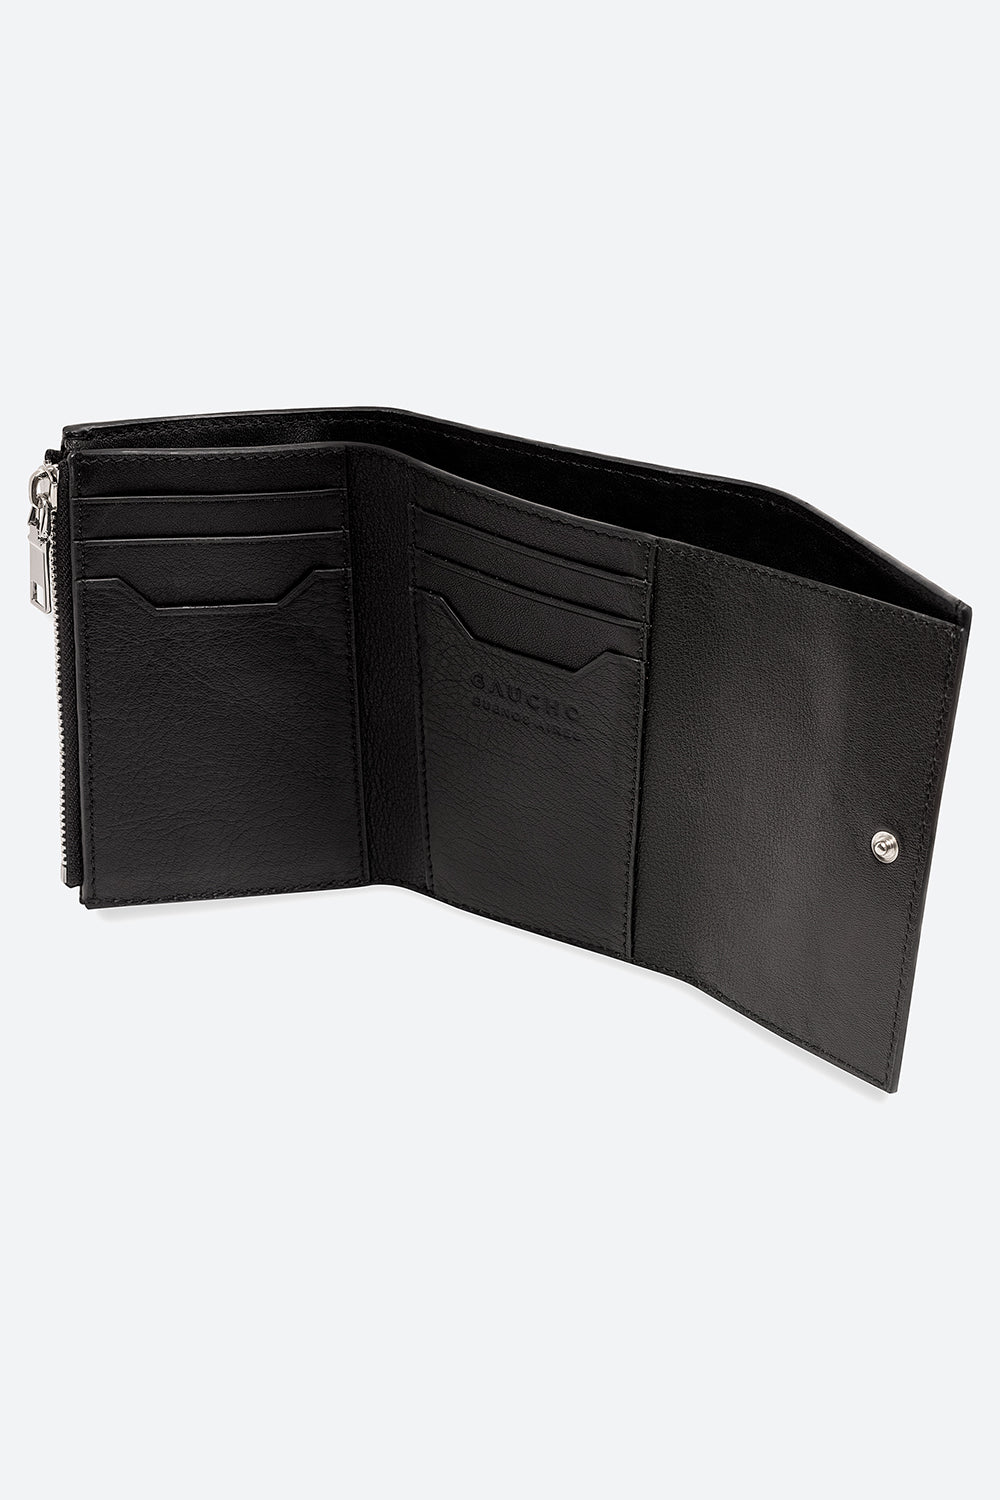 Tigre Tri-Fold Wallet in Black